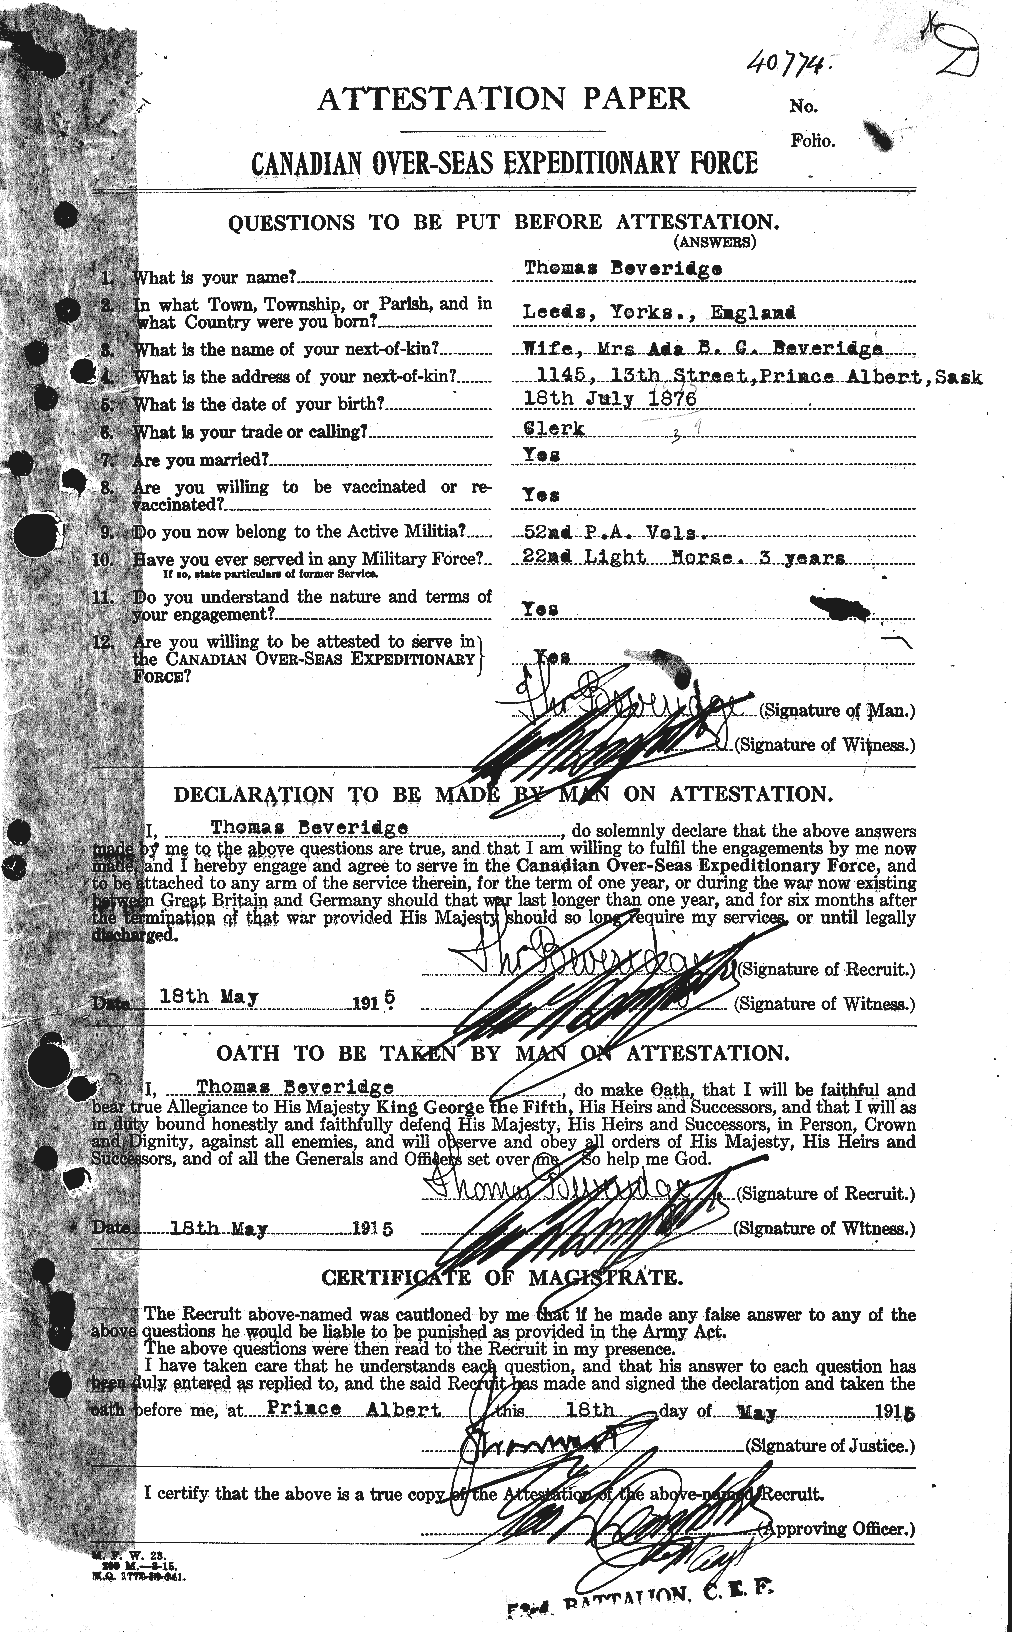 Dossiers du Personnel de la Première Guerre mondiale - CEC 237381a